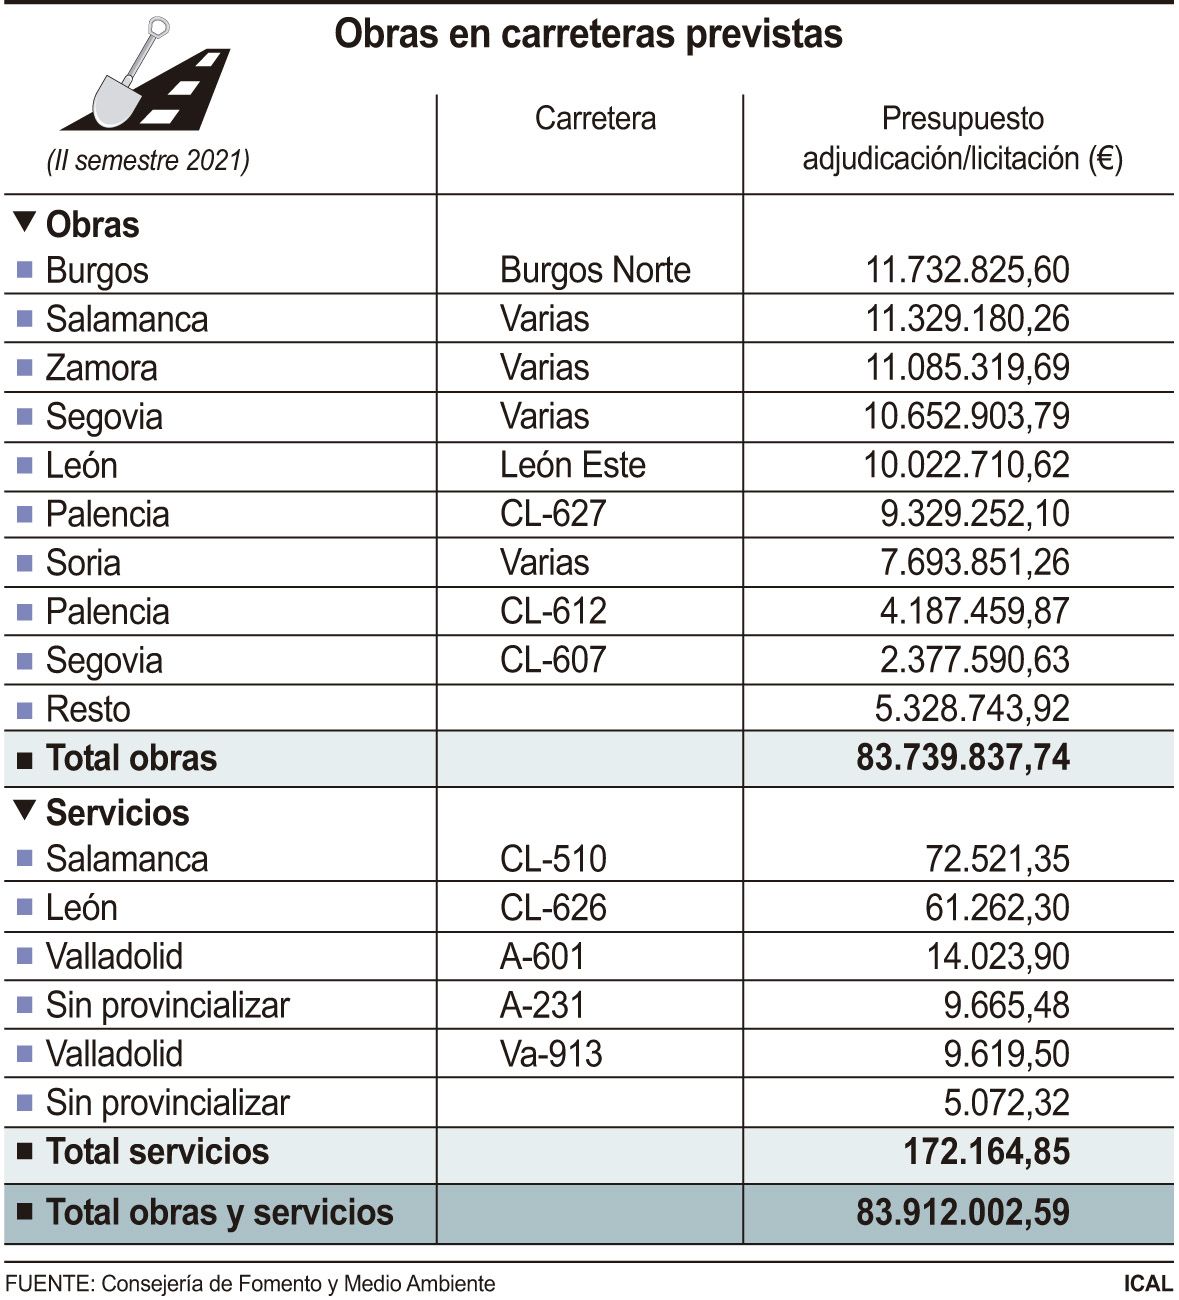 Obras previstas en carreteras de Castilla y León